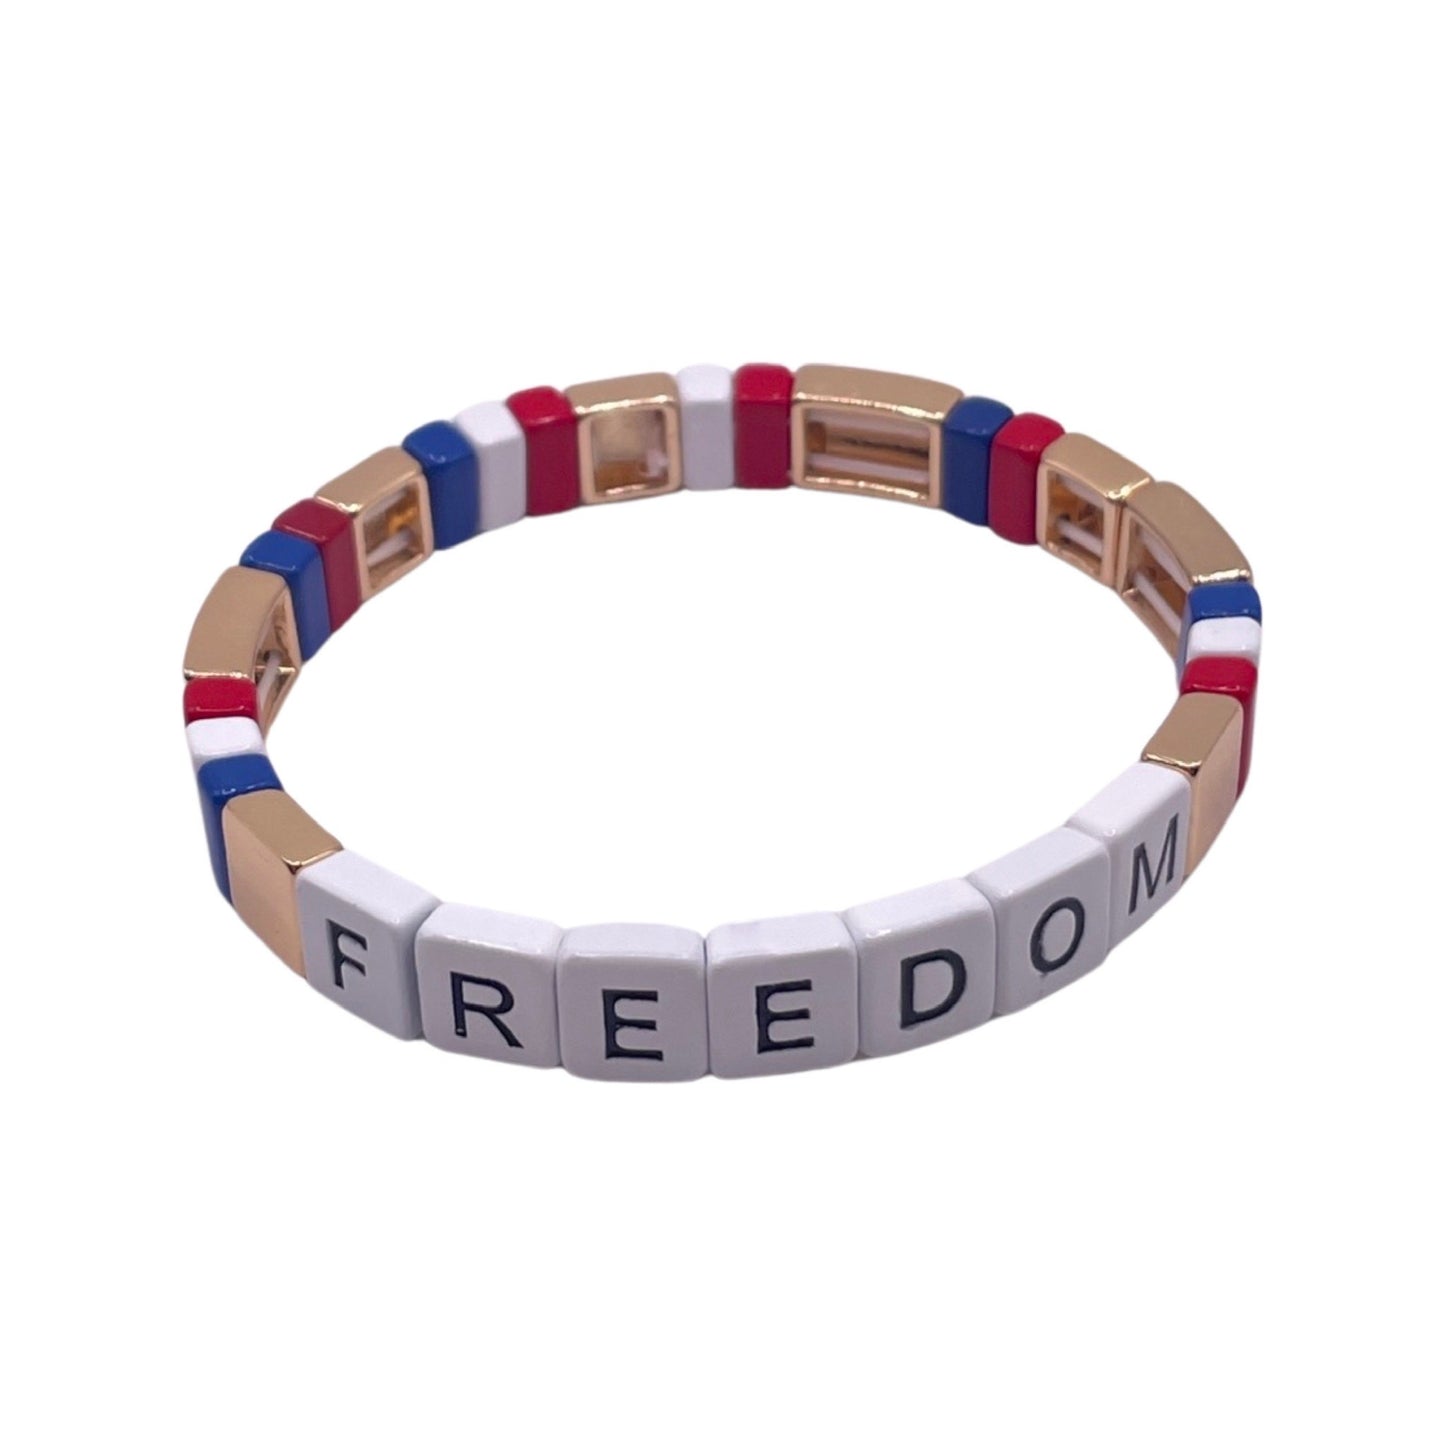 FREEDOM TILE BRACELET RED / WHITE / BLUE